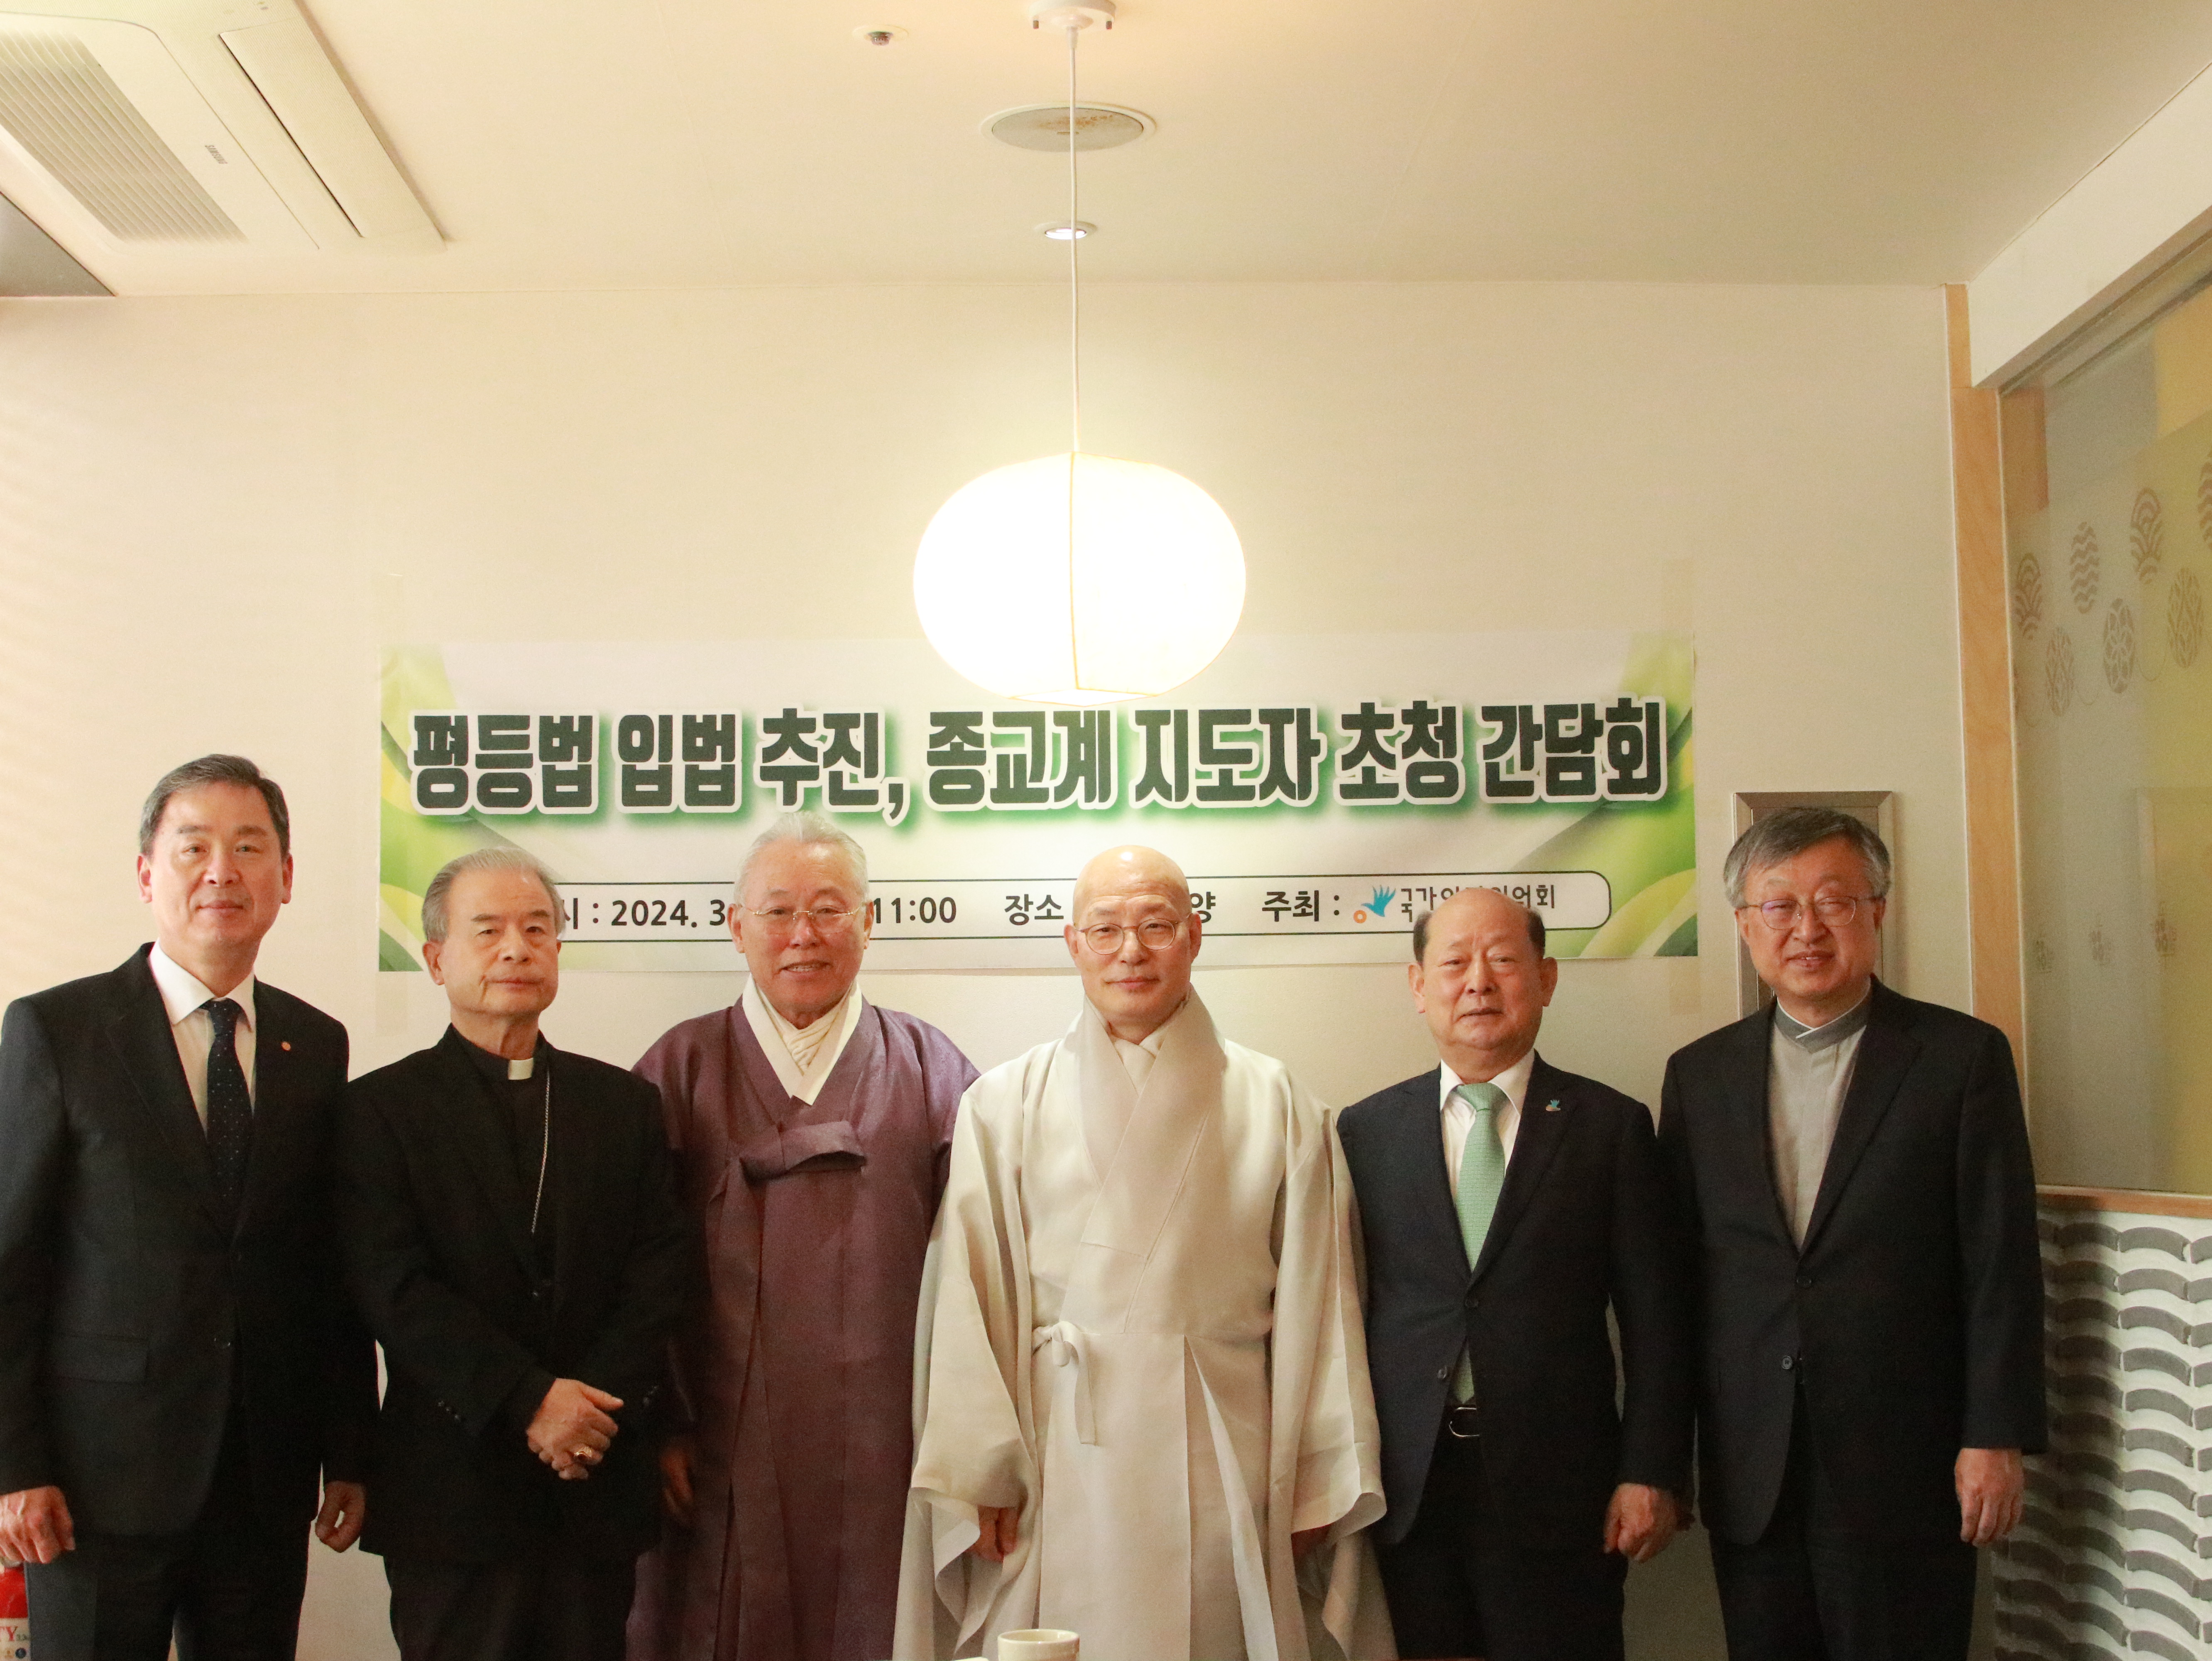 국가인권위원회(위원장 송두환, 이하 ‘인권위’)는 2024년 3월 22일, 한국종교지도자협의회를 구성하고 있는 종단 지도자를 초청하여 평등법 입법 추진 간담회를 진행하였습니다.